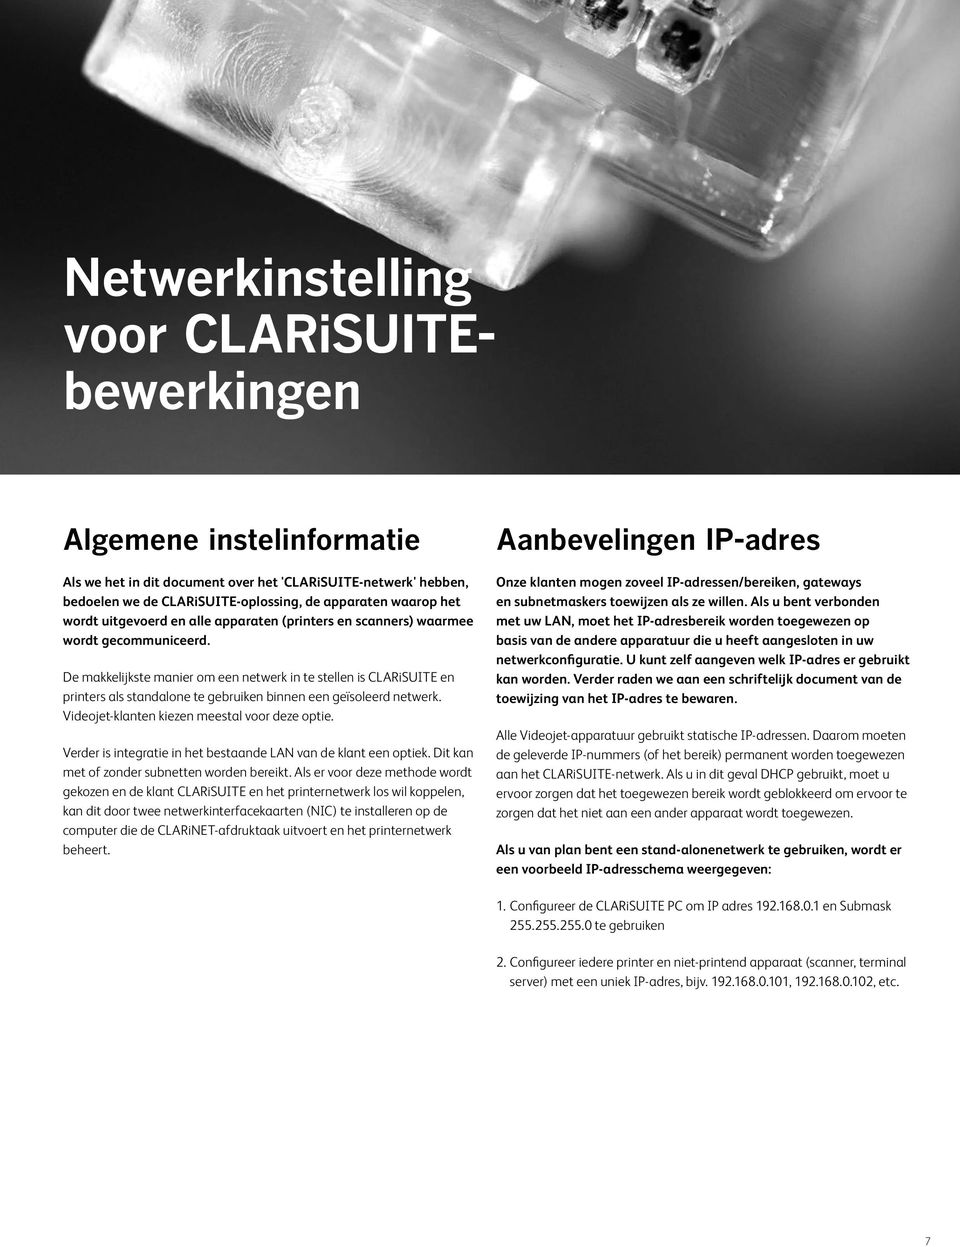 De makkelijkste manier om een netwerk in te stellen is CLARiSUITE en printers als standalone te gebruiken binnen een geïsoleerd netwerk. Videojet-klanten kiezen meestal voor deze optie.